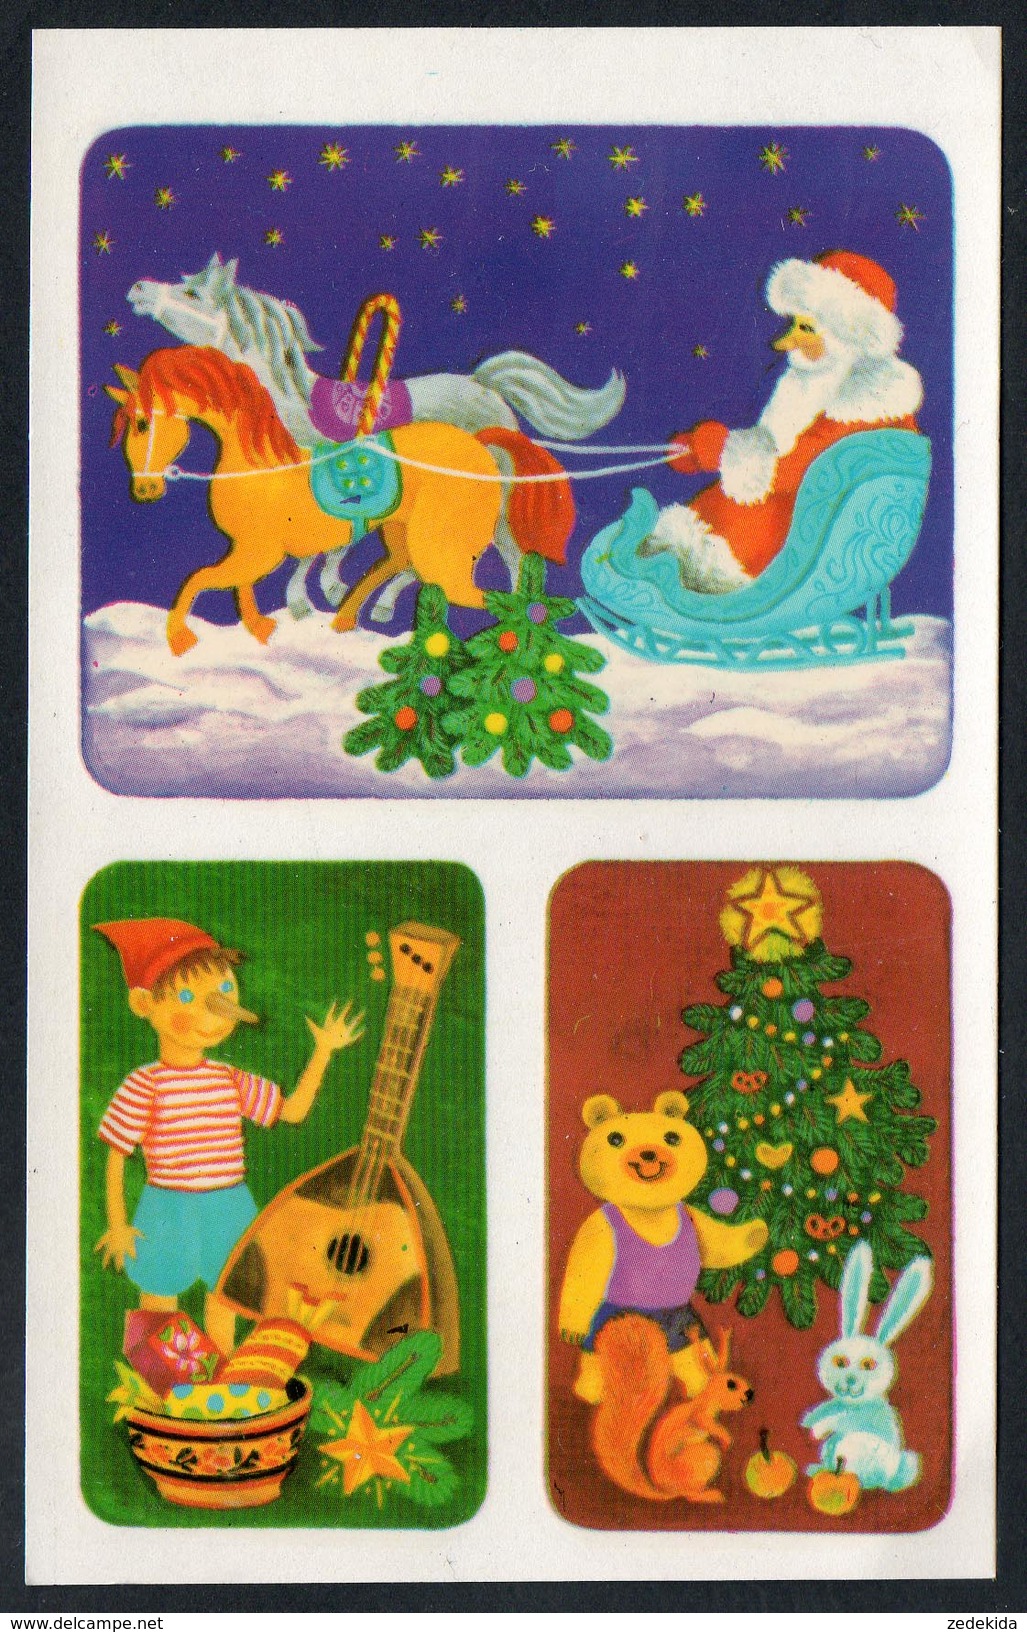 9625  - Abziehbild Schiebebild - Weihnachten Weihnachtsmann - Planet Verlag DDR 1986 - Santa Claus